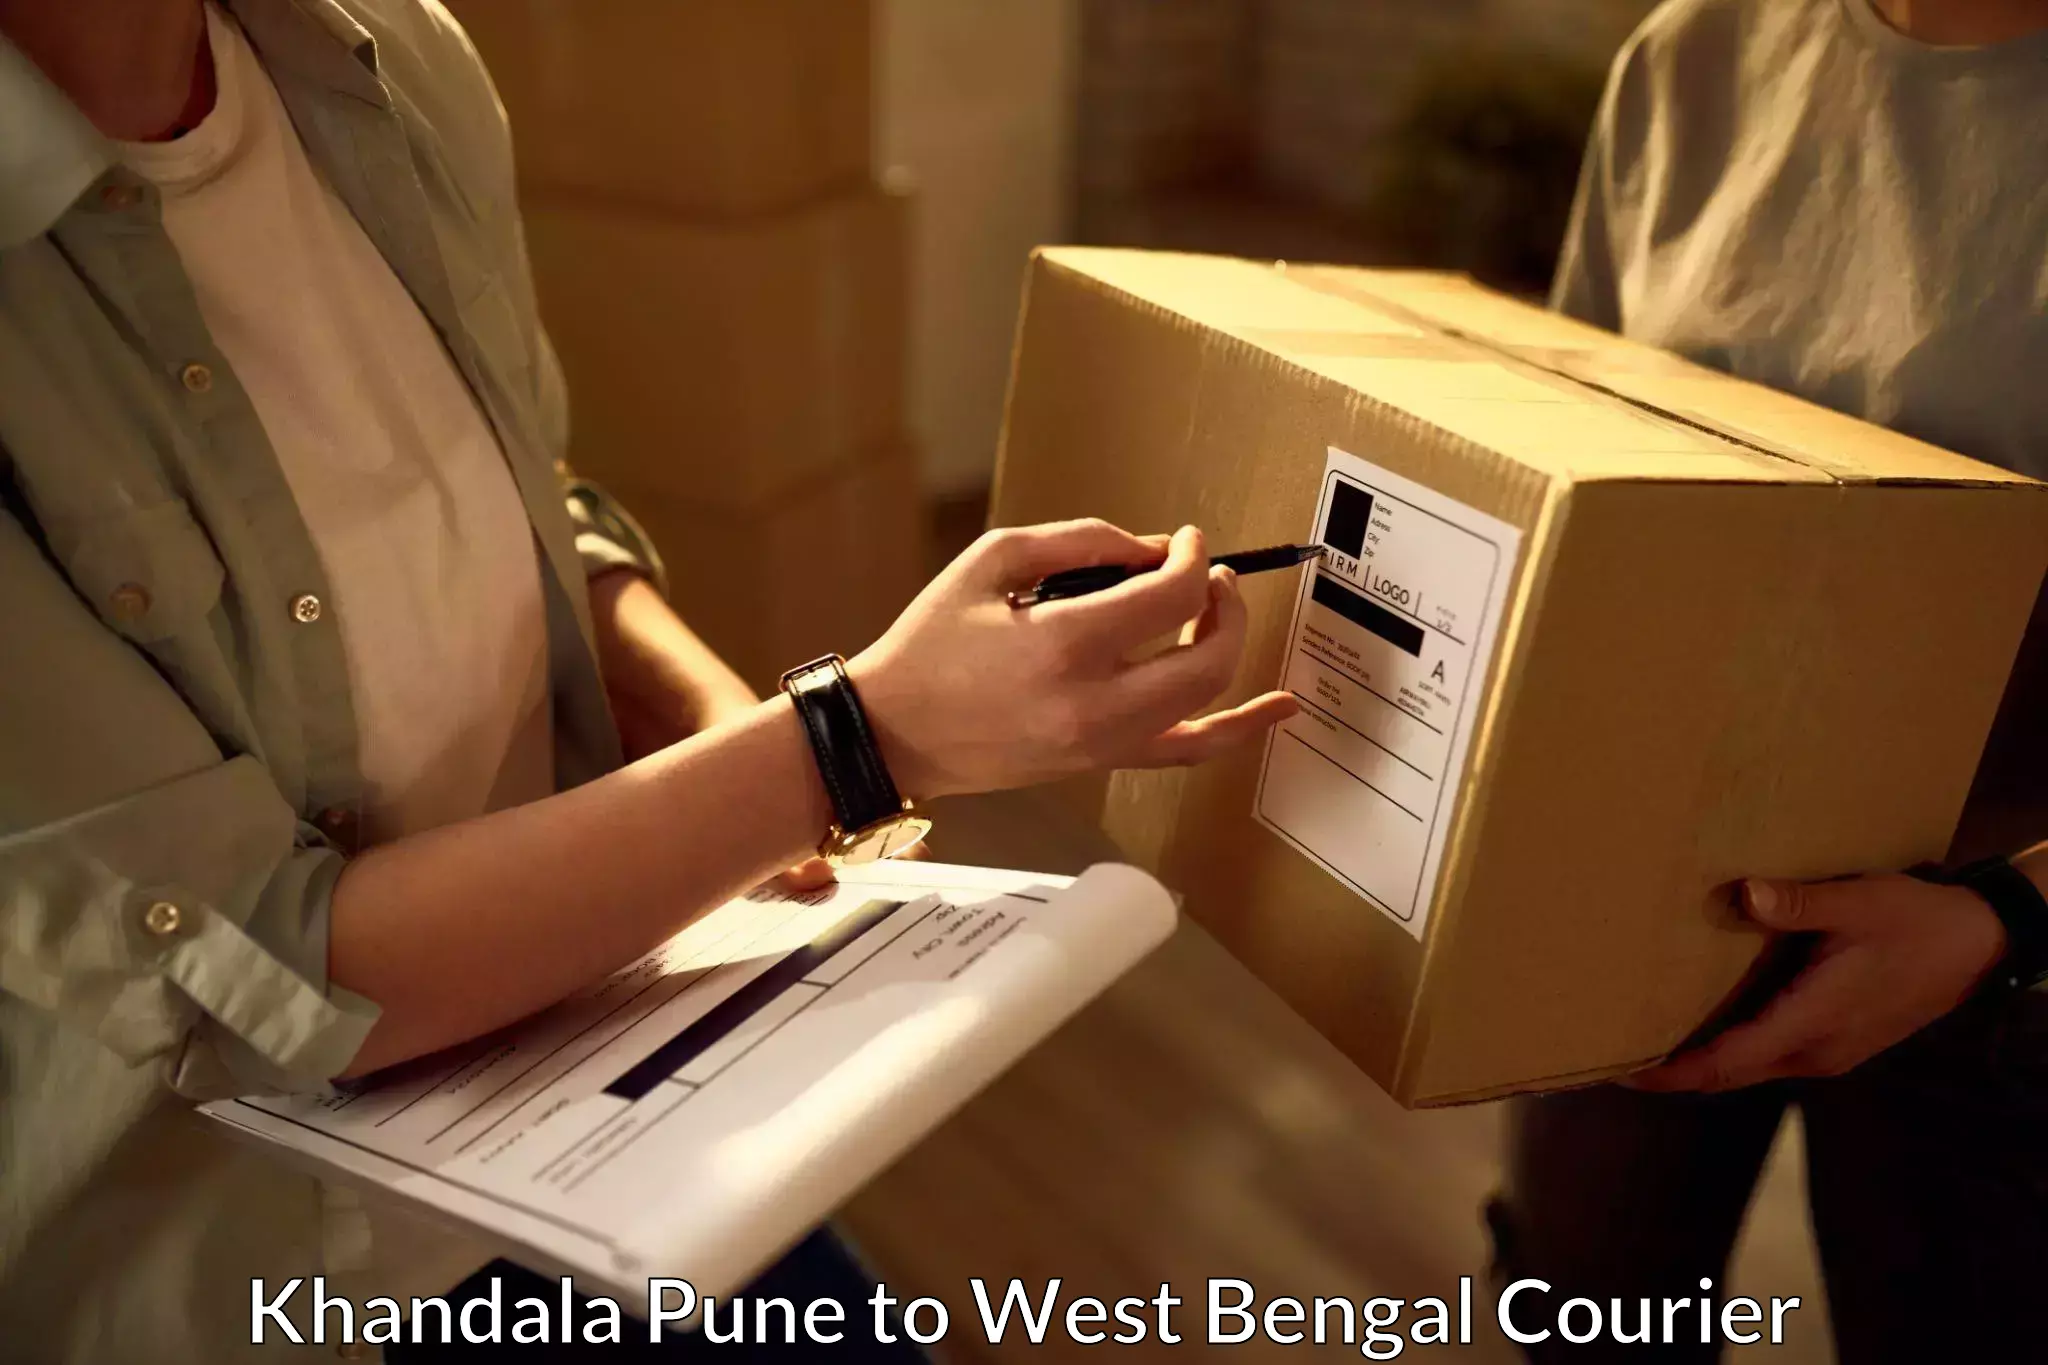 Specialized shipment handling Khandala Pune to Lataguri